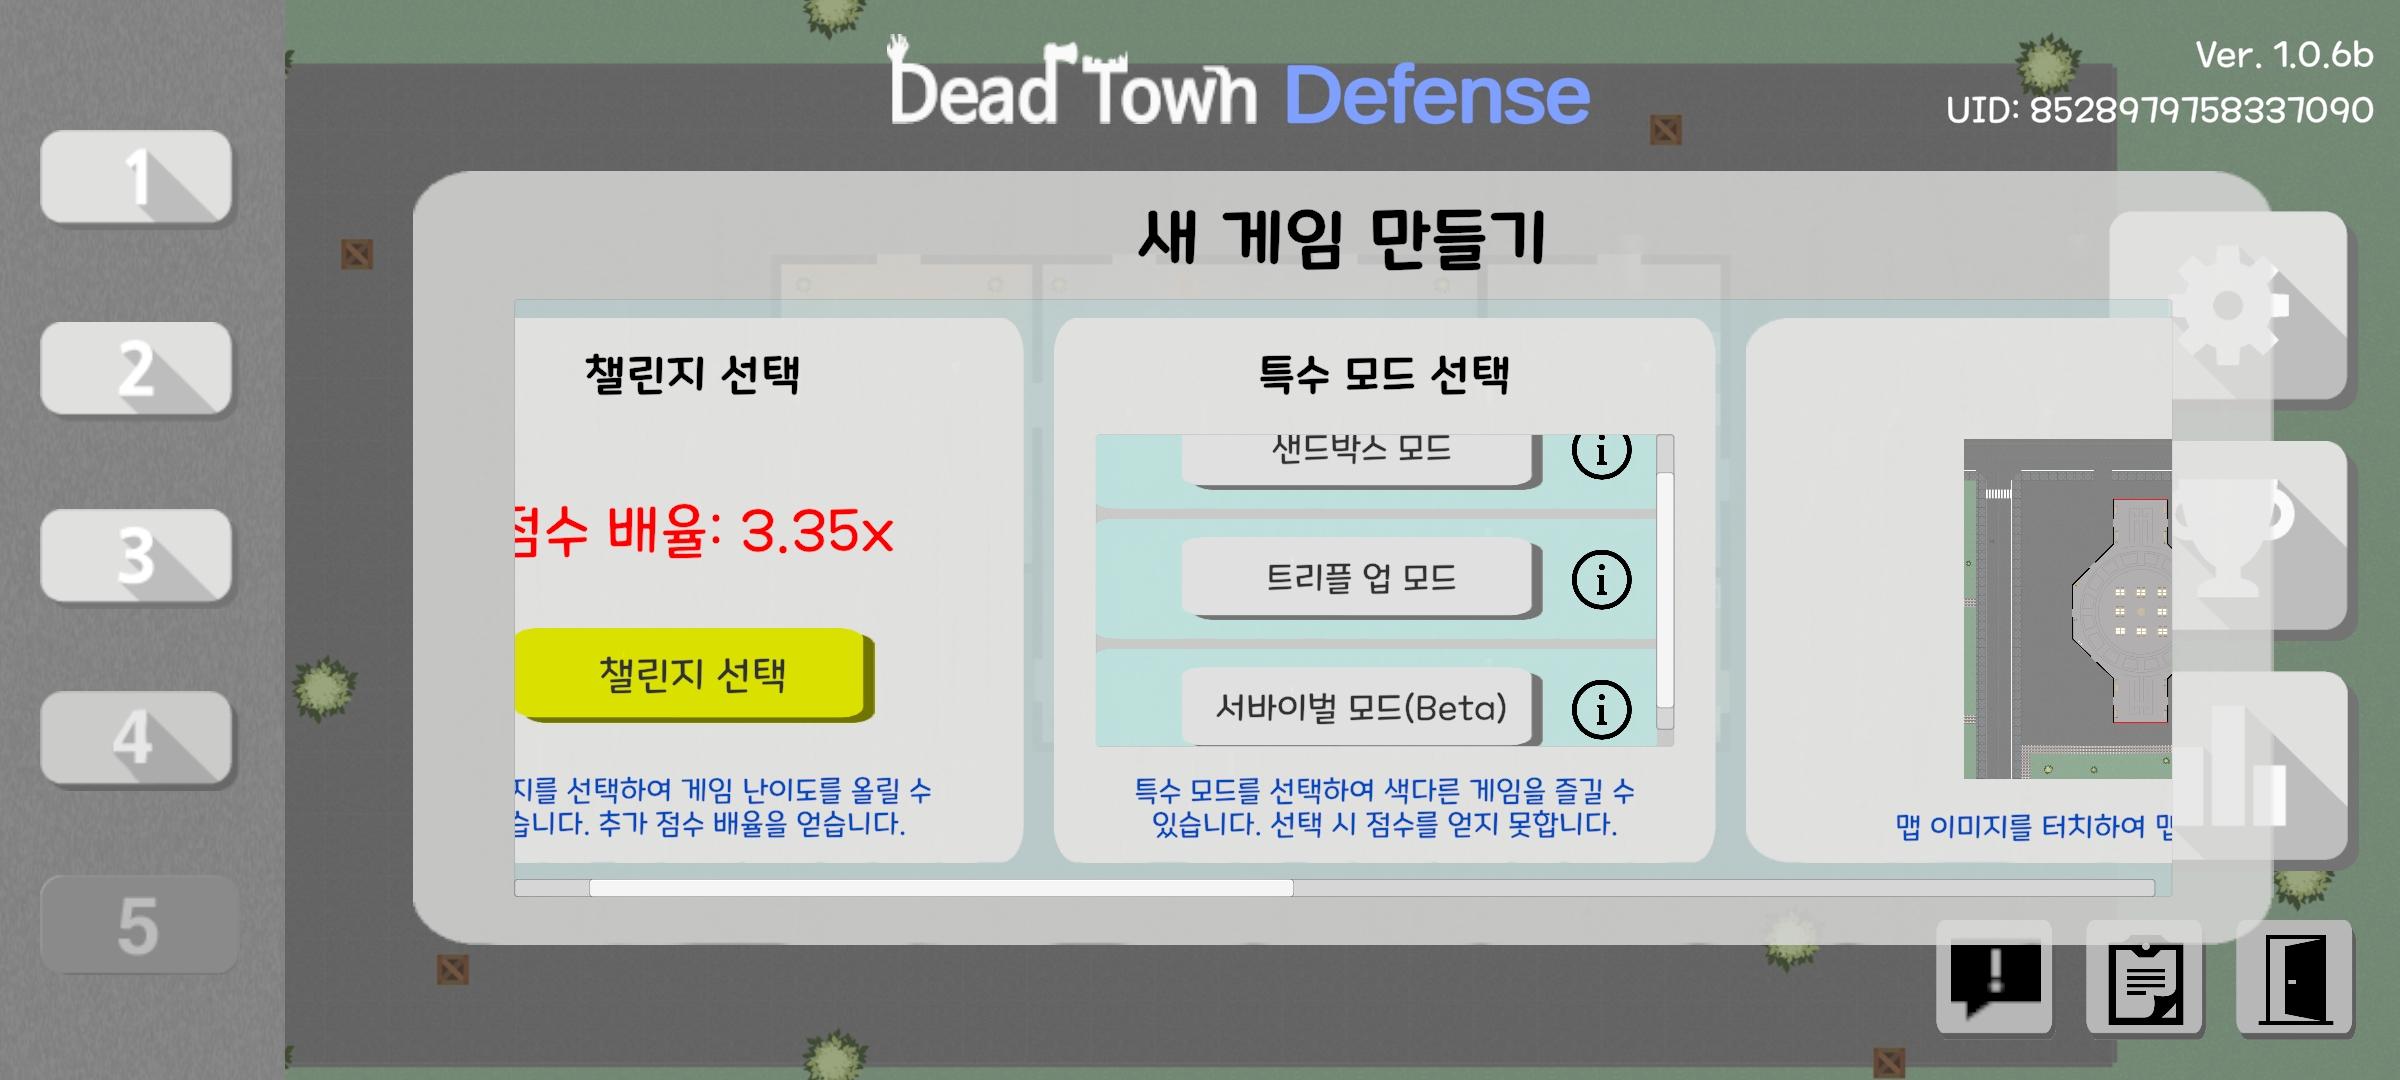 데드 타운 디펜스 [Dead Town Defense]遊戲截圖